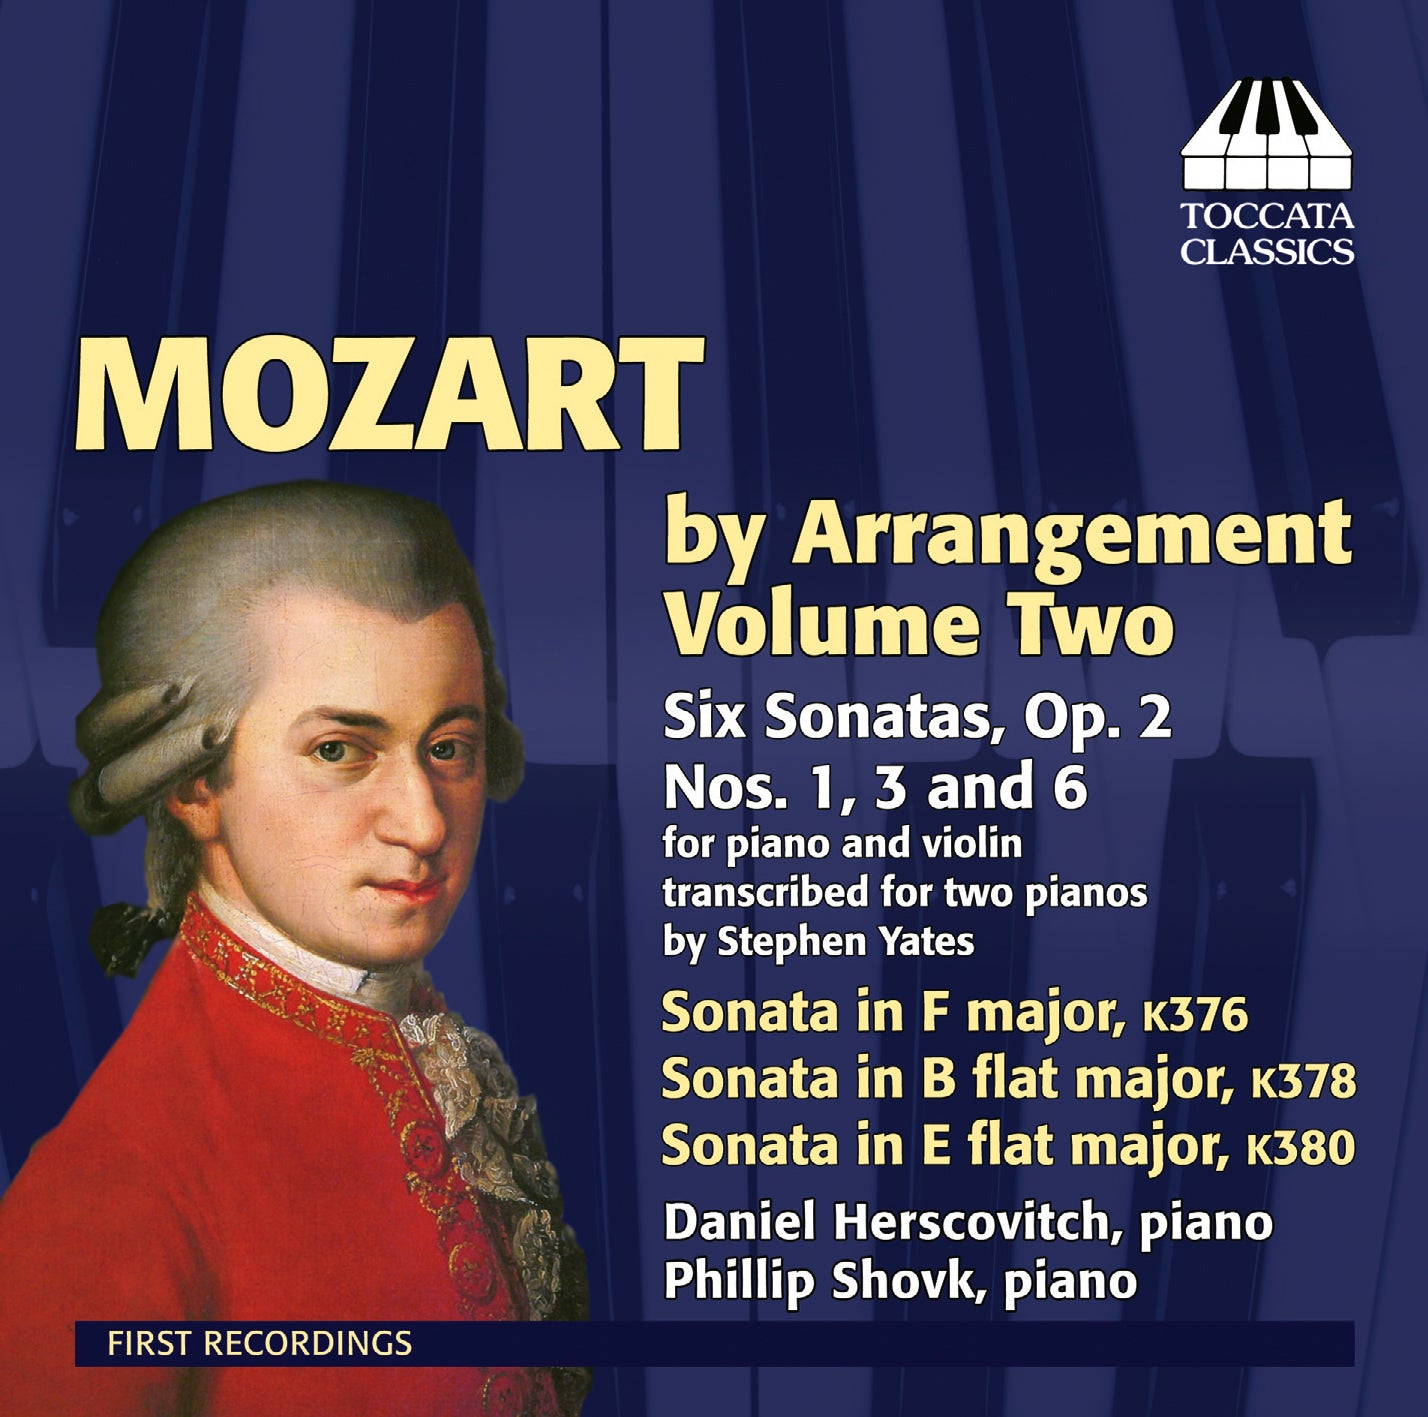 Mozart By Arrangement, Vol. 2  Herscovitch, Shovk